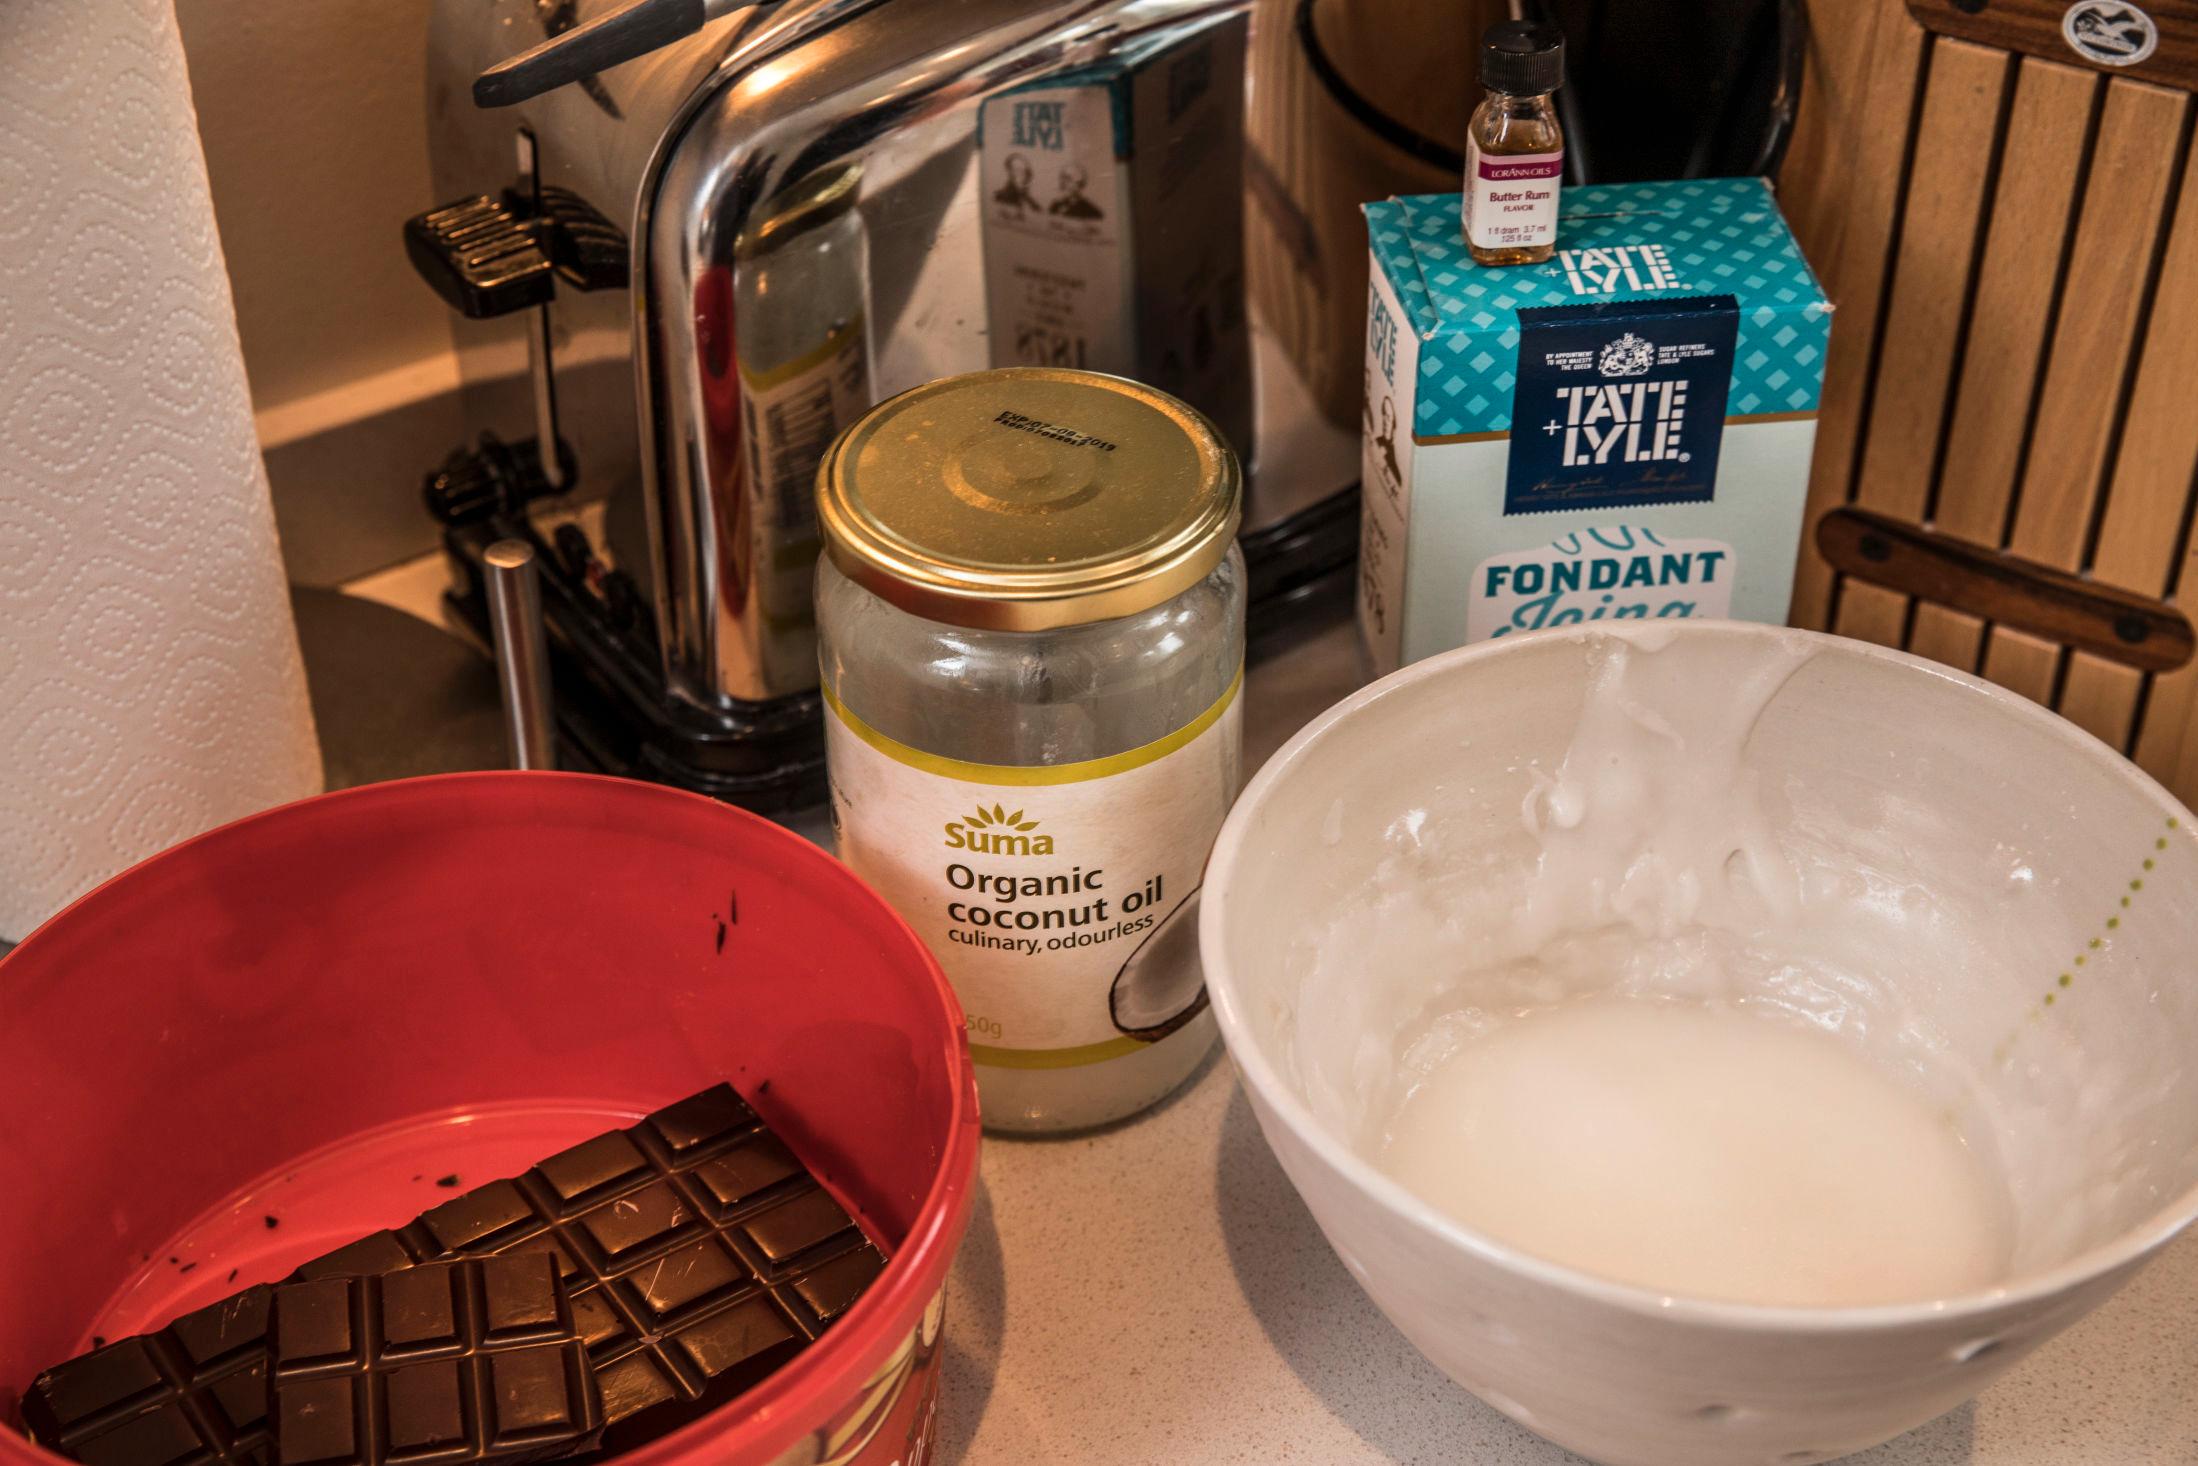 INGREDIENSENE: Dette er noen av ingrediensene Eirik brukte. Foto: Mattis Sandblad/VG